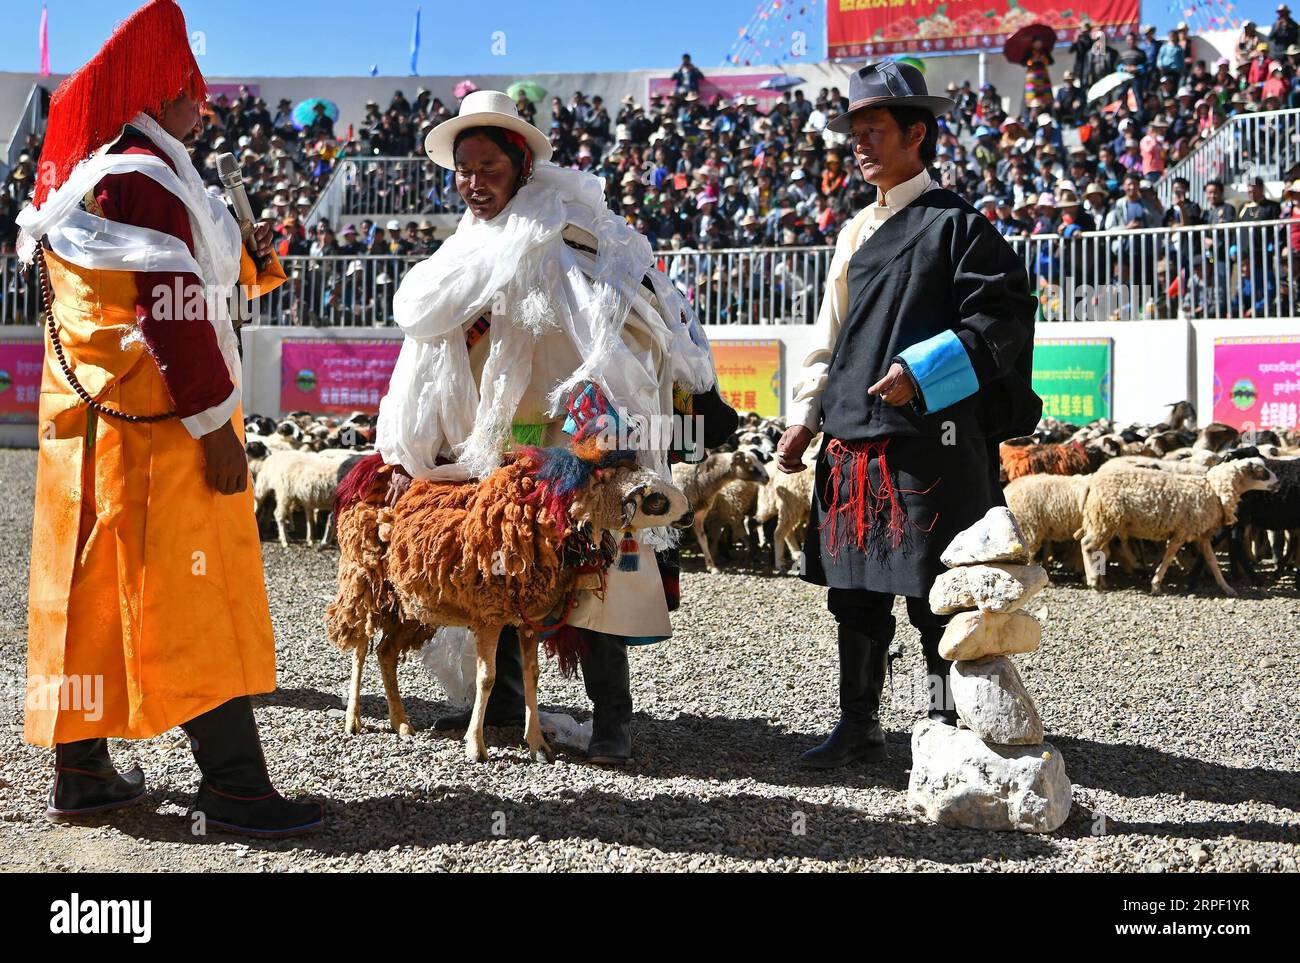 (190910) -- XIGAZE, 10. September 2019 -- Hirten eulogisieren einen Glockenspieler während der Schafschau in der Zhexia Township of Bainang County in Xigaze, Südwestchinas Autonome Region Tibet, 9. September 2019. Schafe zeigen oder Schafe zählen, ist eine traditionelle Aktivität in den Weidegebieten in der autonomen Region Tibet im Südwesten Chinas, in der Hirten die Anzahl ihrer Schafe zeigen und zählen. Sie werden auch ihre Glockengelehrten in einer symbolischen Geste aussuchen und eulogisieren, um im nächsten Jahr für ein gutes Wachstum des Viehbestands zu beten. (Foto von /Xinhua) (InTibet)CHINA-TIBET-XIGAZE-SHEEP SHOW (CN) SunxFei PUBLIKATION Stockfoto